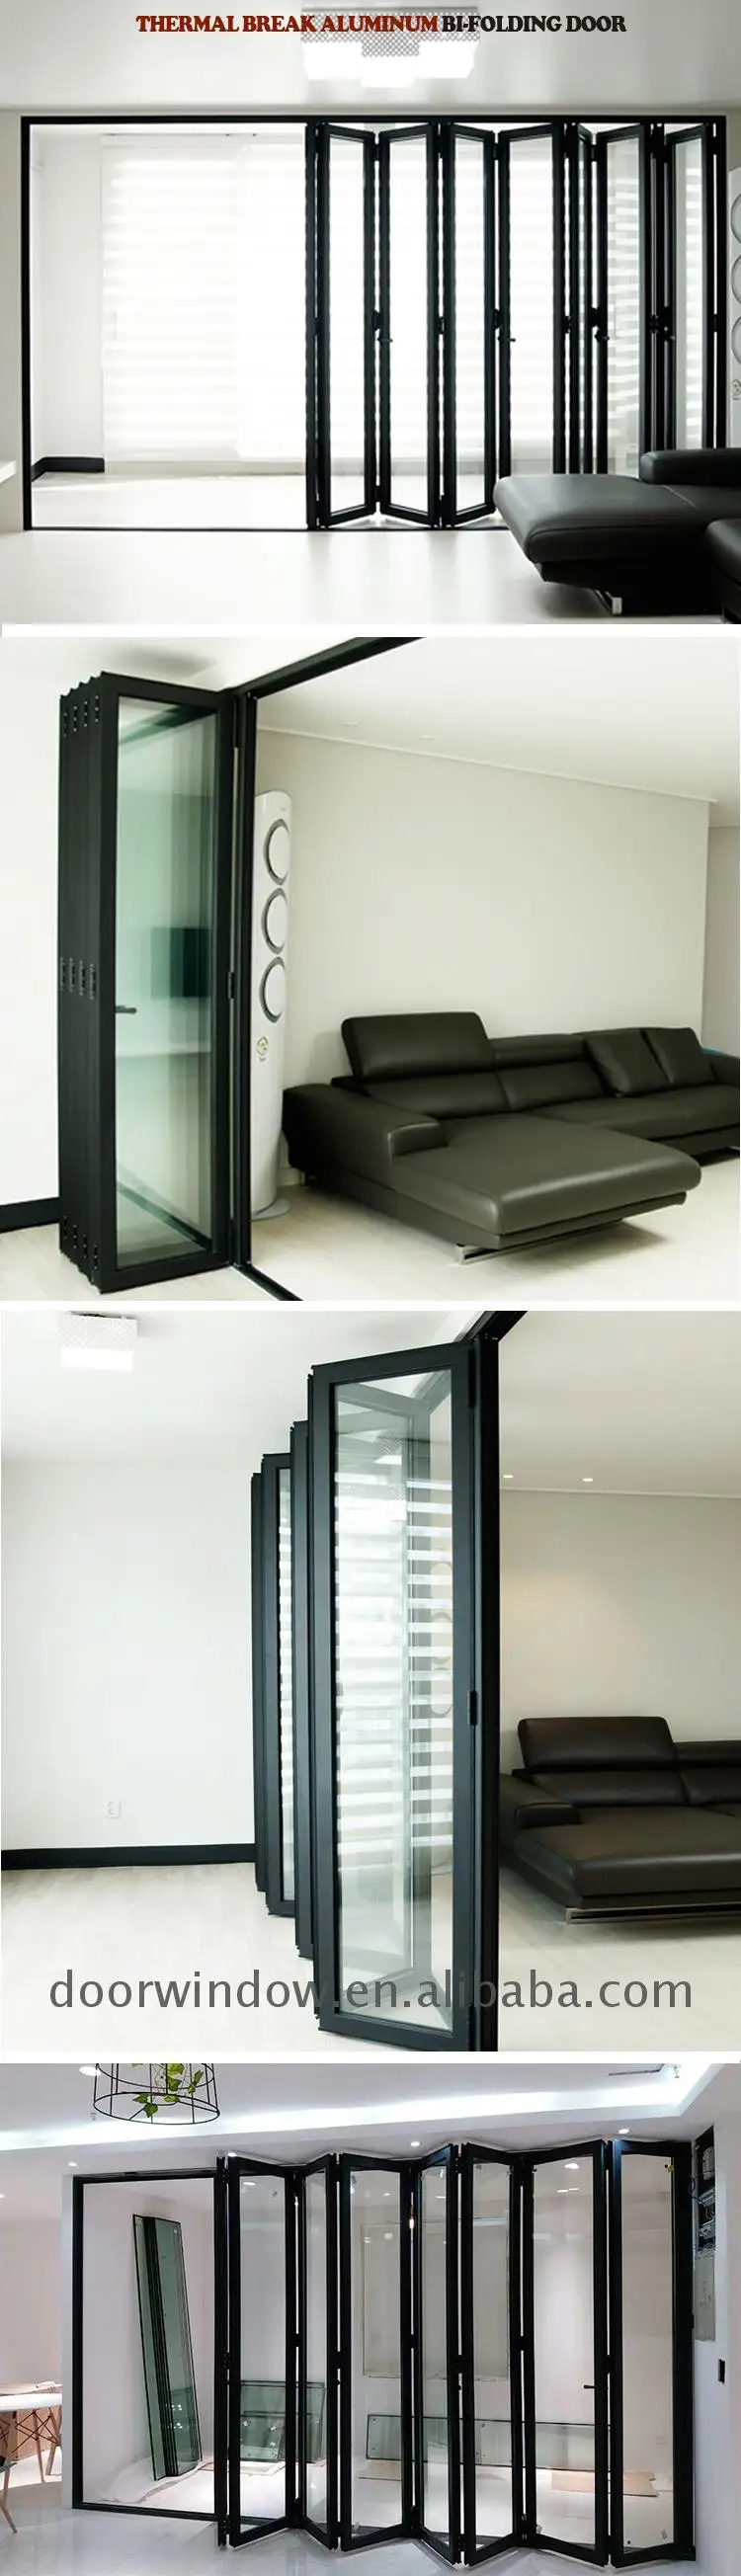 Factory made veranda bifold doors installation standard door height